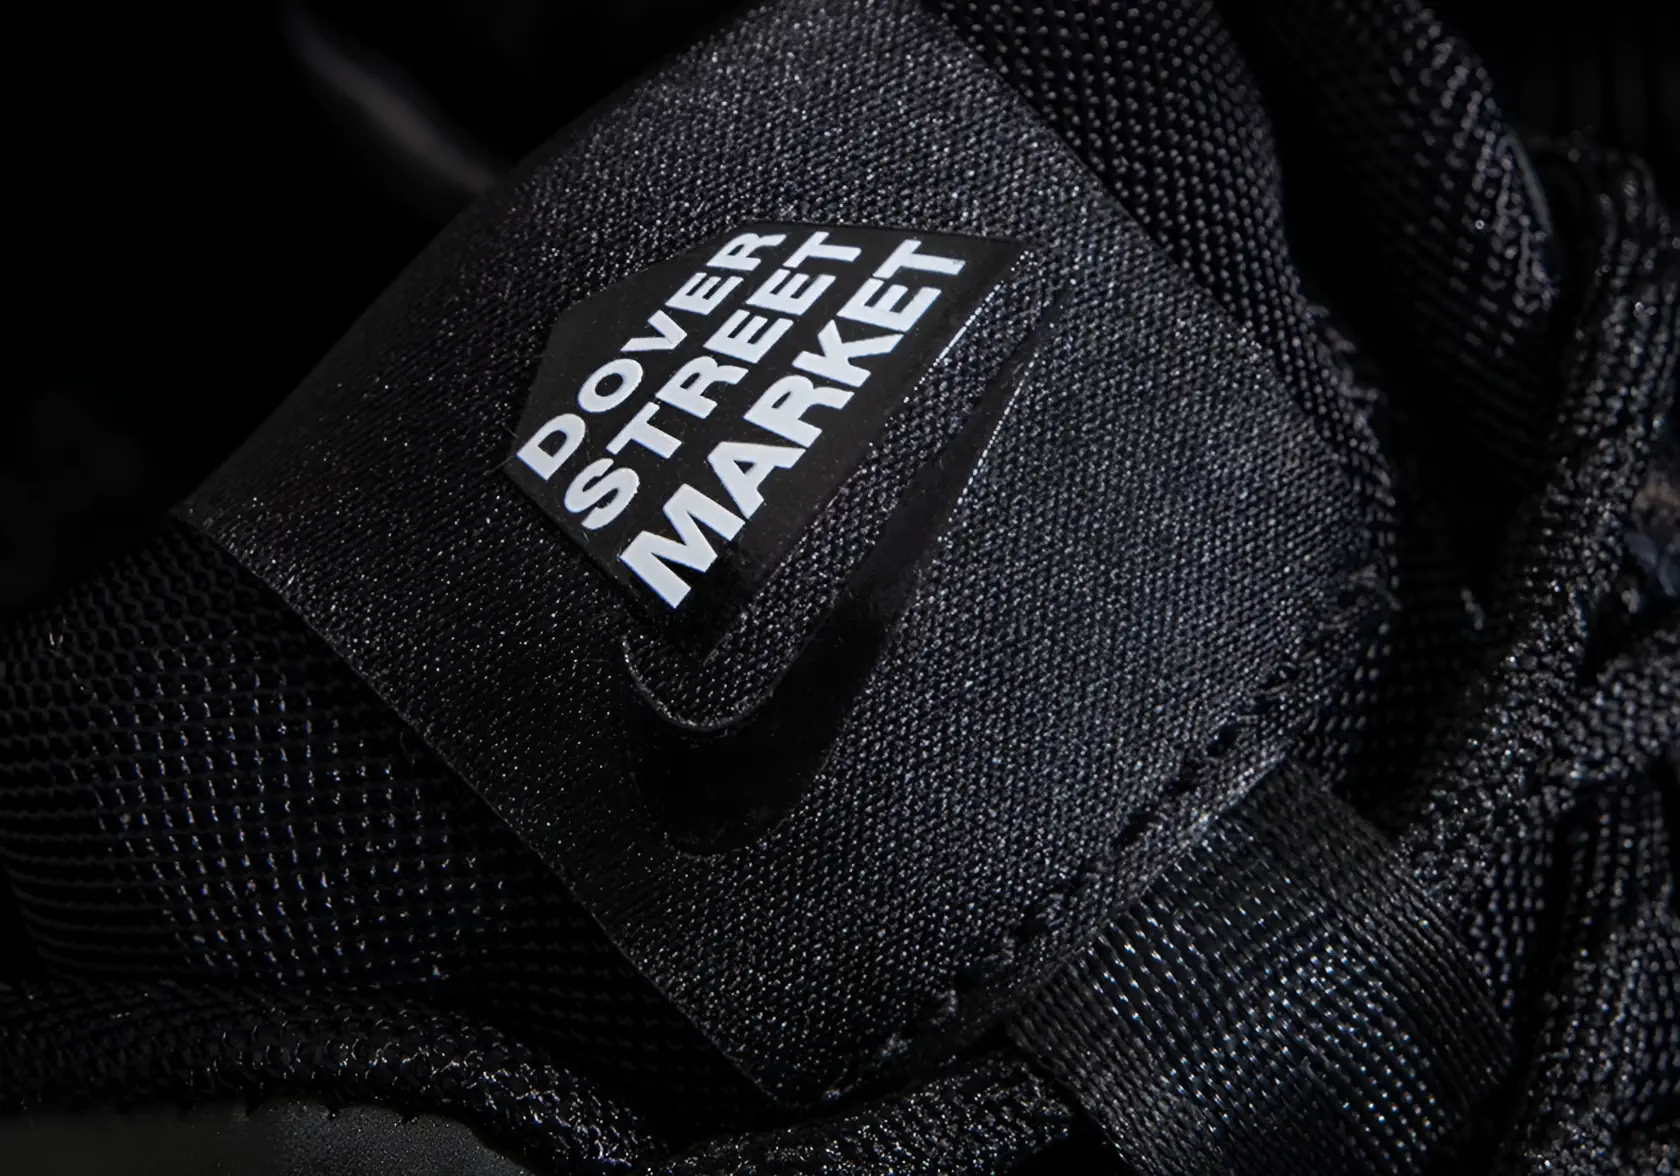 Dover Street Market habille la Nike Zoom Vomero 5 d'une élégance énigmatique toute noire